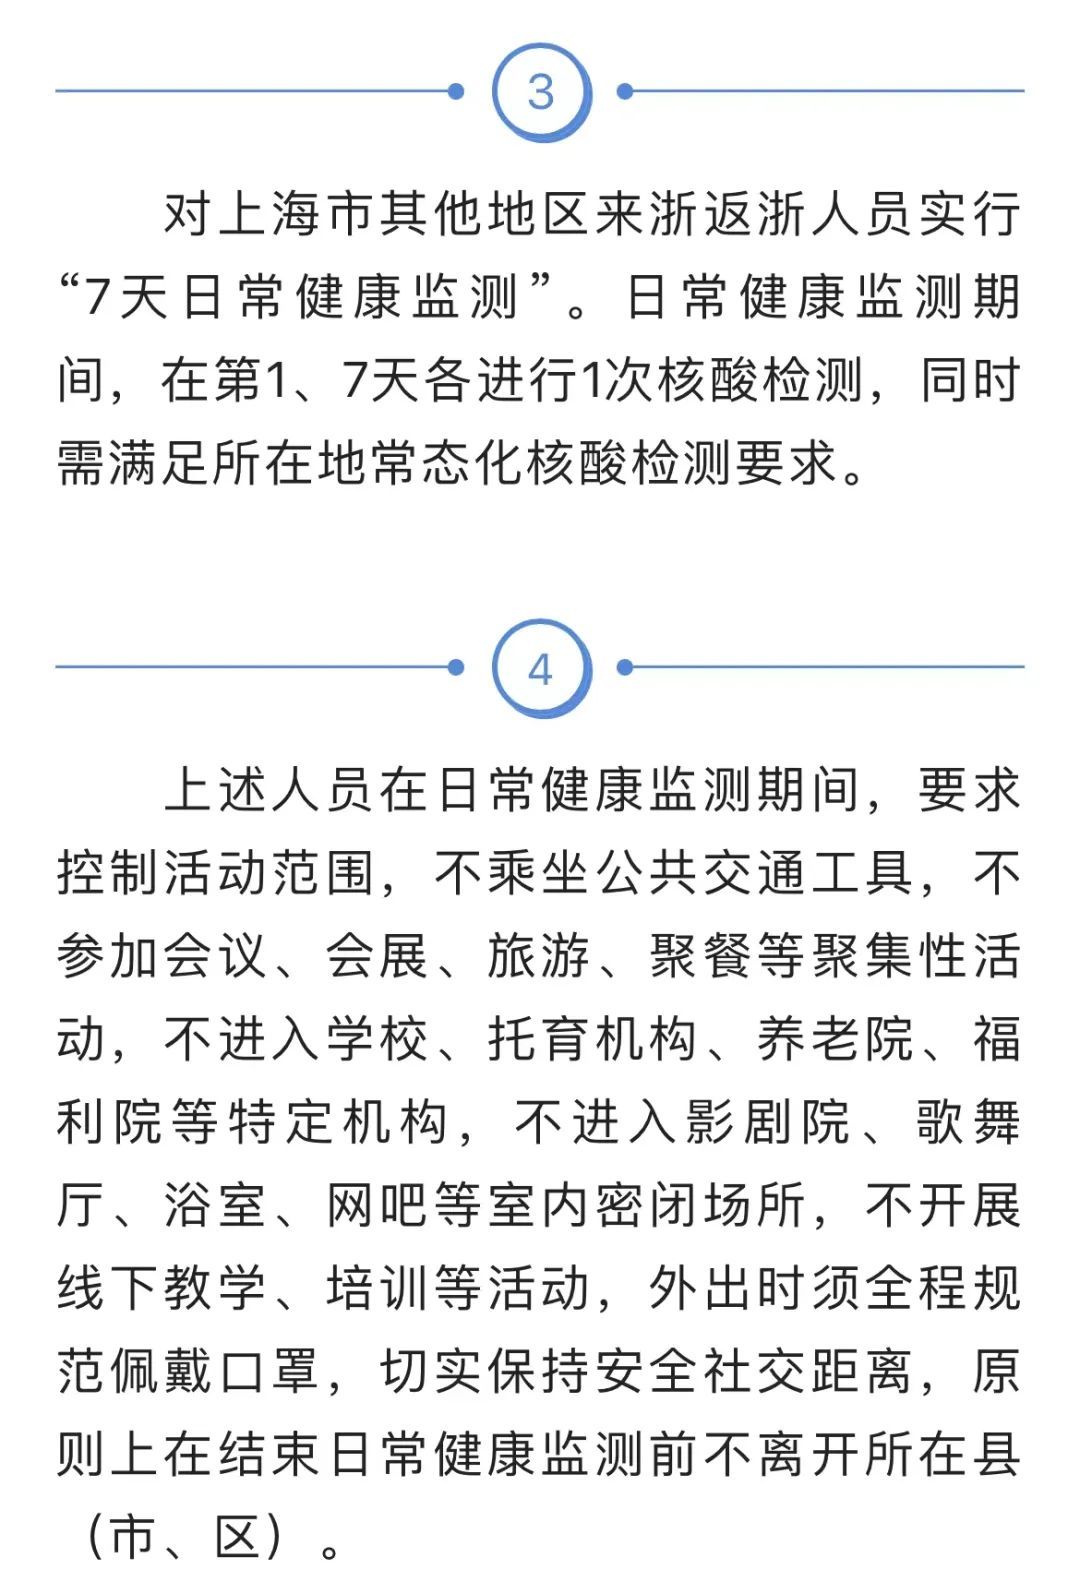 上海去浙江不再一刀切“7+7”！其他省市政策有变吗？最新汇总